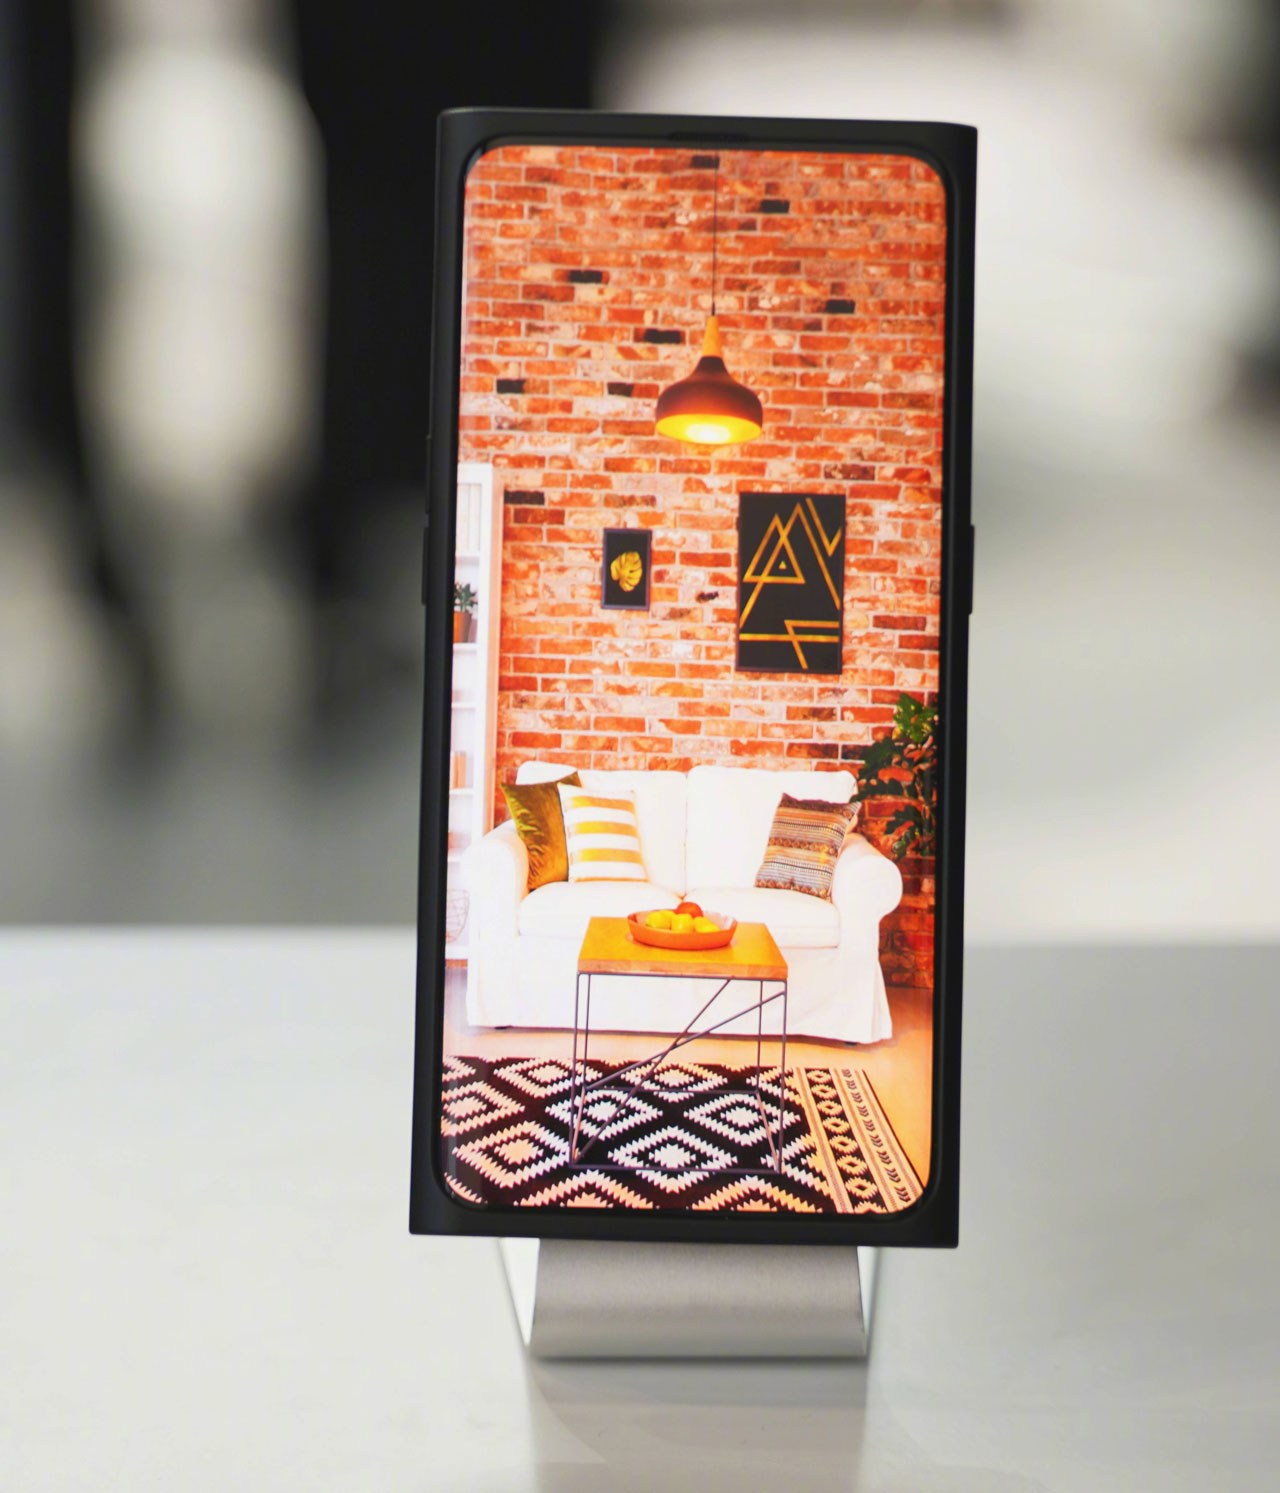 OPPO chính thức trình làng smartphone sử dụng
công nghệ camera selfie ẩn hiện dưới màn hình